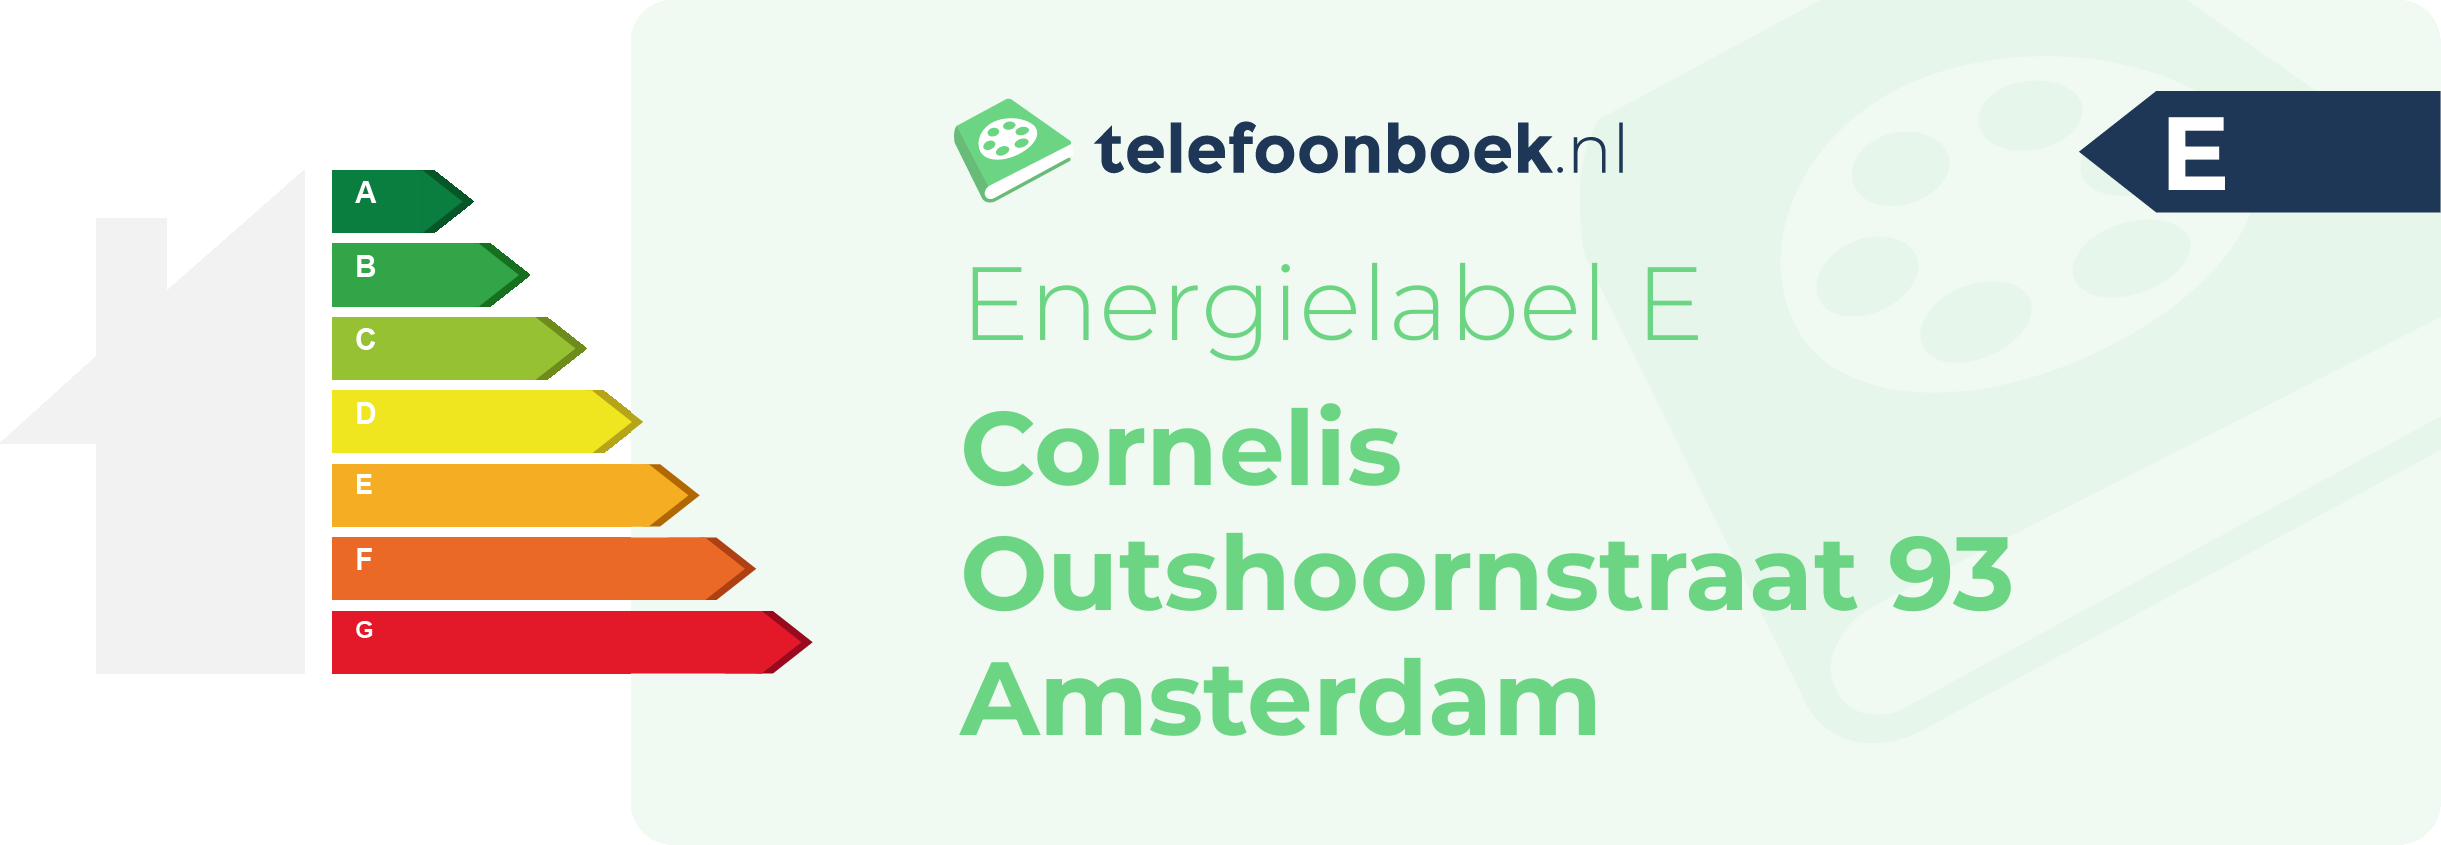 Energielabel Cornelis Outshoornstraat 93 Amsterdam